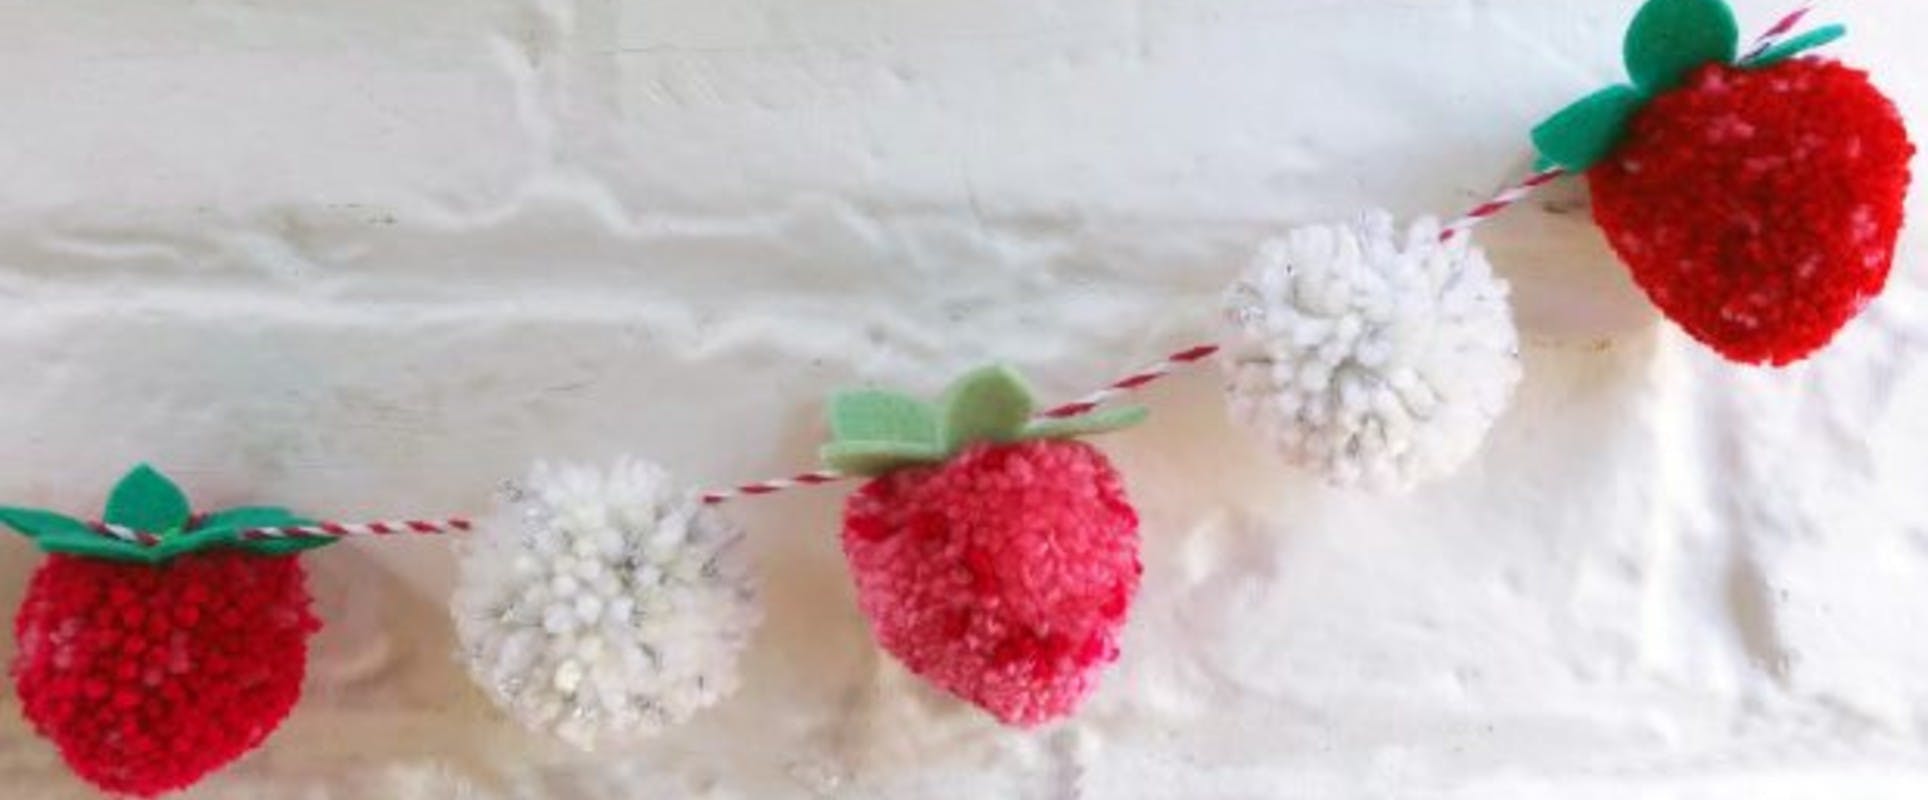 Make a strawberries & pom pom | LoveCrafts